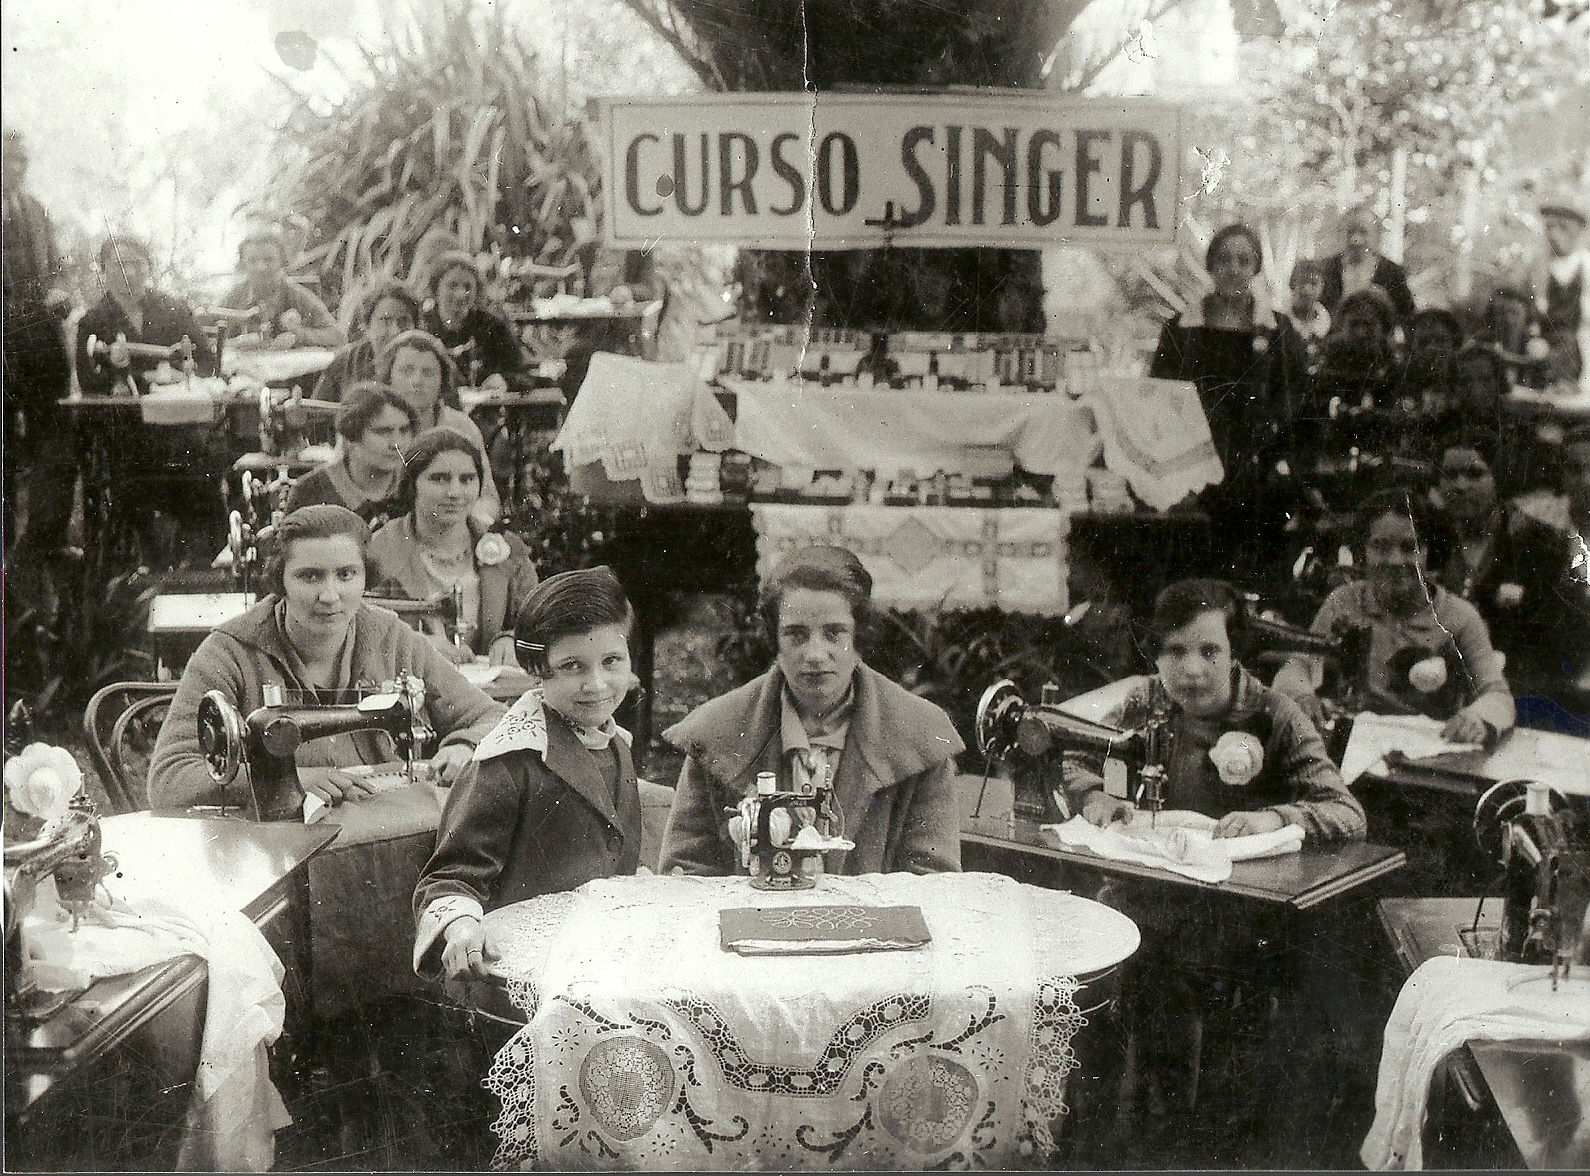 Curso de bordado e de máquinas de coser, patrocinado pola marca Singer en Lourenzá, en 1946. Na foto, cedida polo Concello, vemos un grupo formado só por mulleres, as únicas destinatarias deste tipo de formación naquela época.